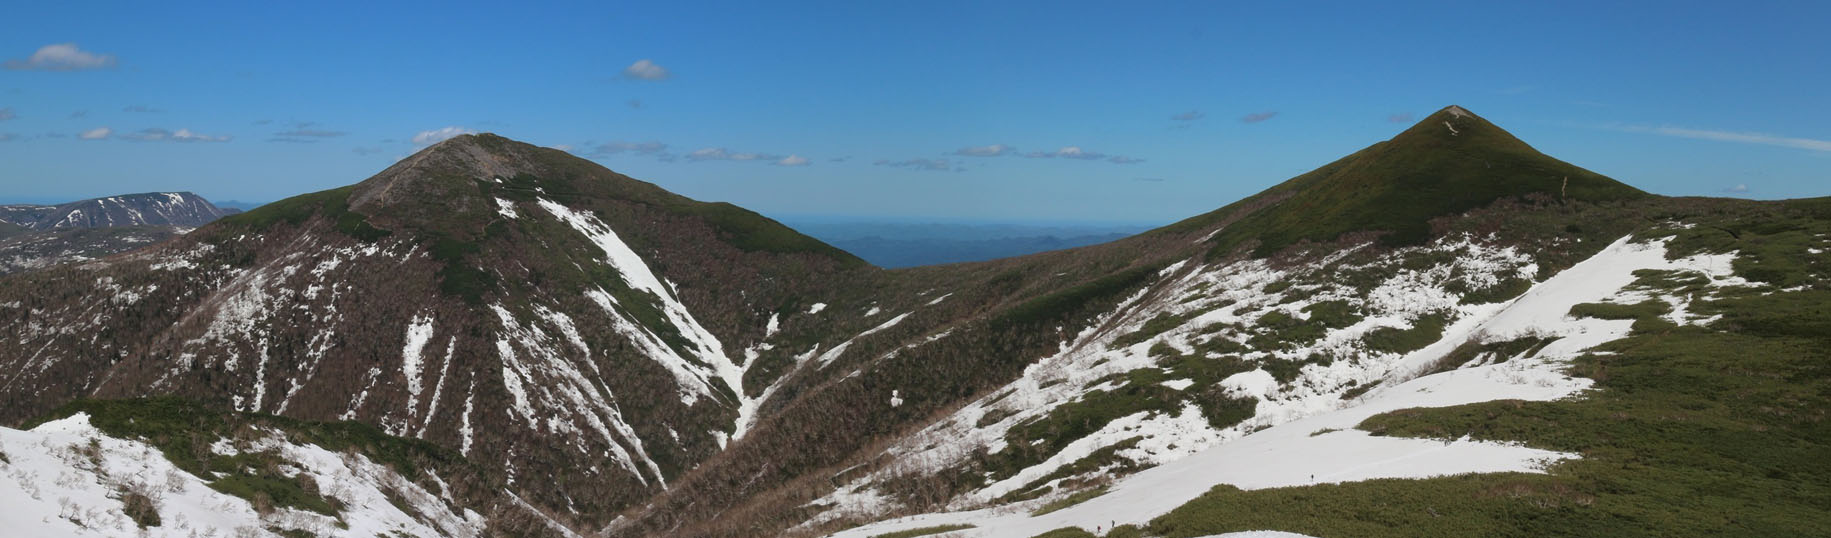 雪が残る西天塩岳と天塩岳を写した写真